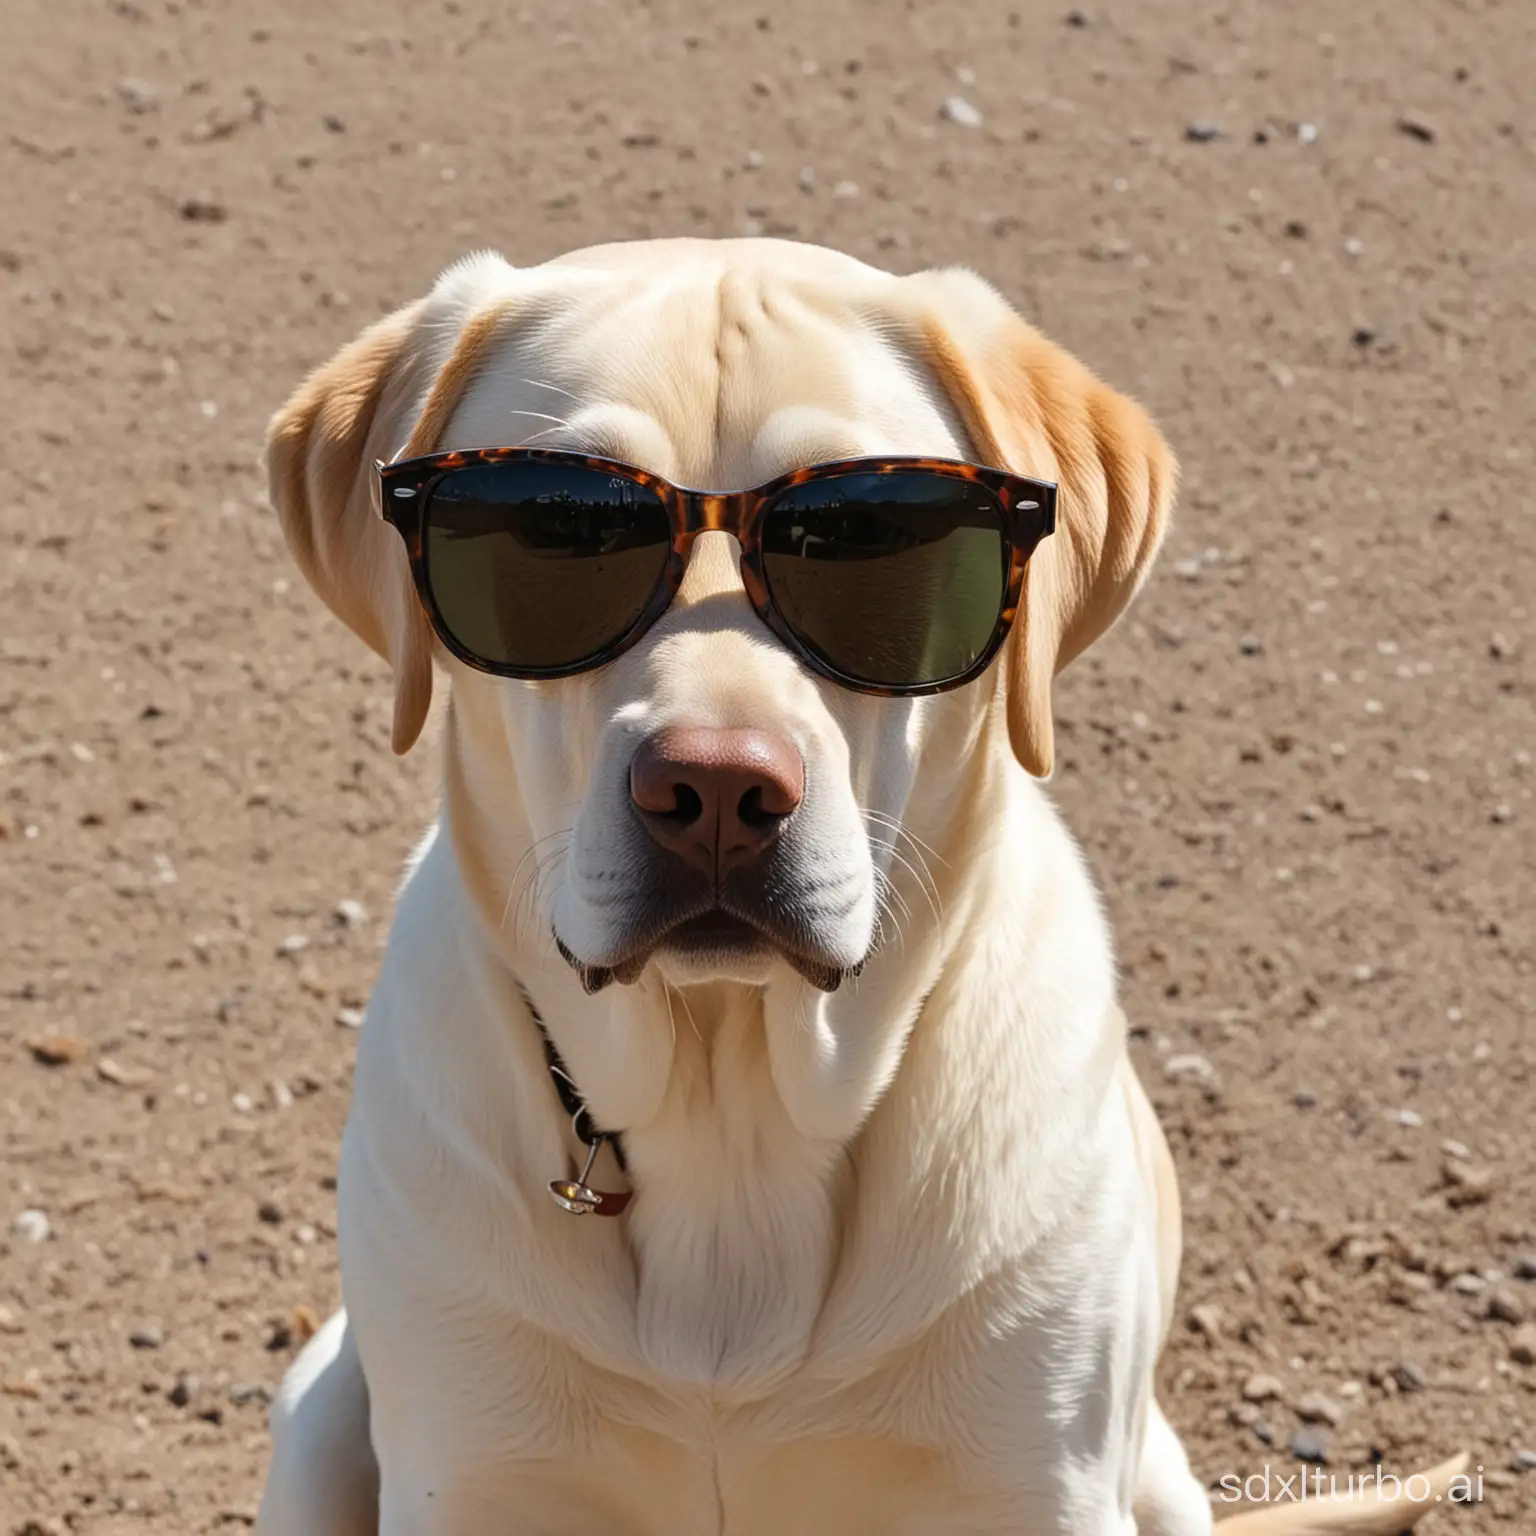 labrador in sunglasses